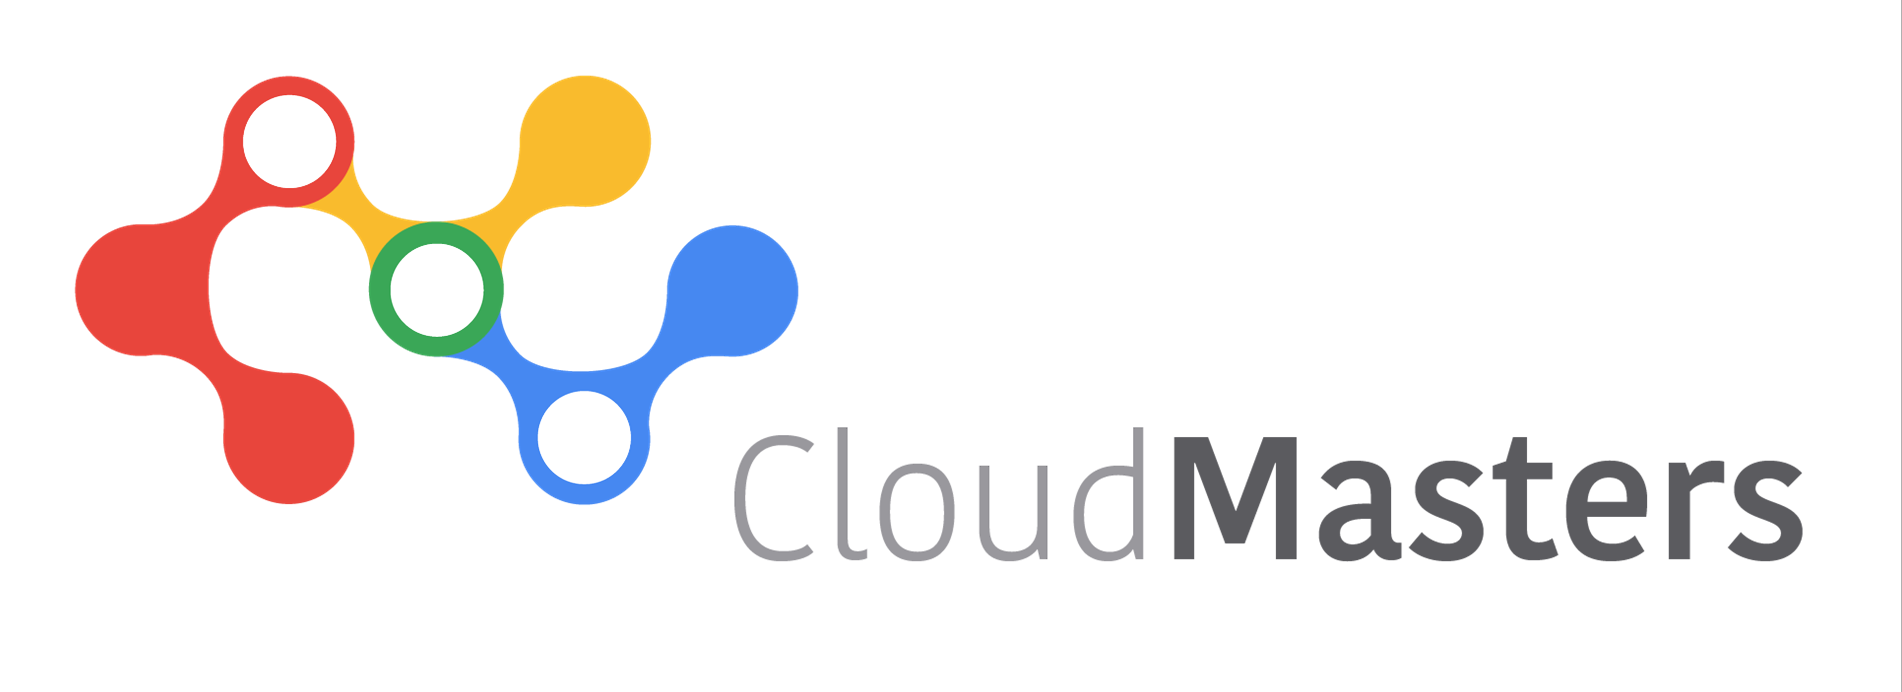 Cloud Masters logo-dark .png